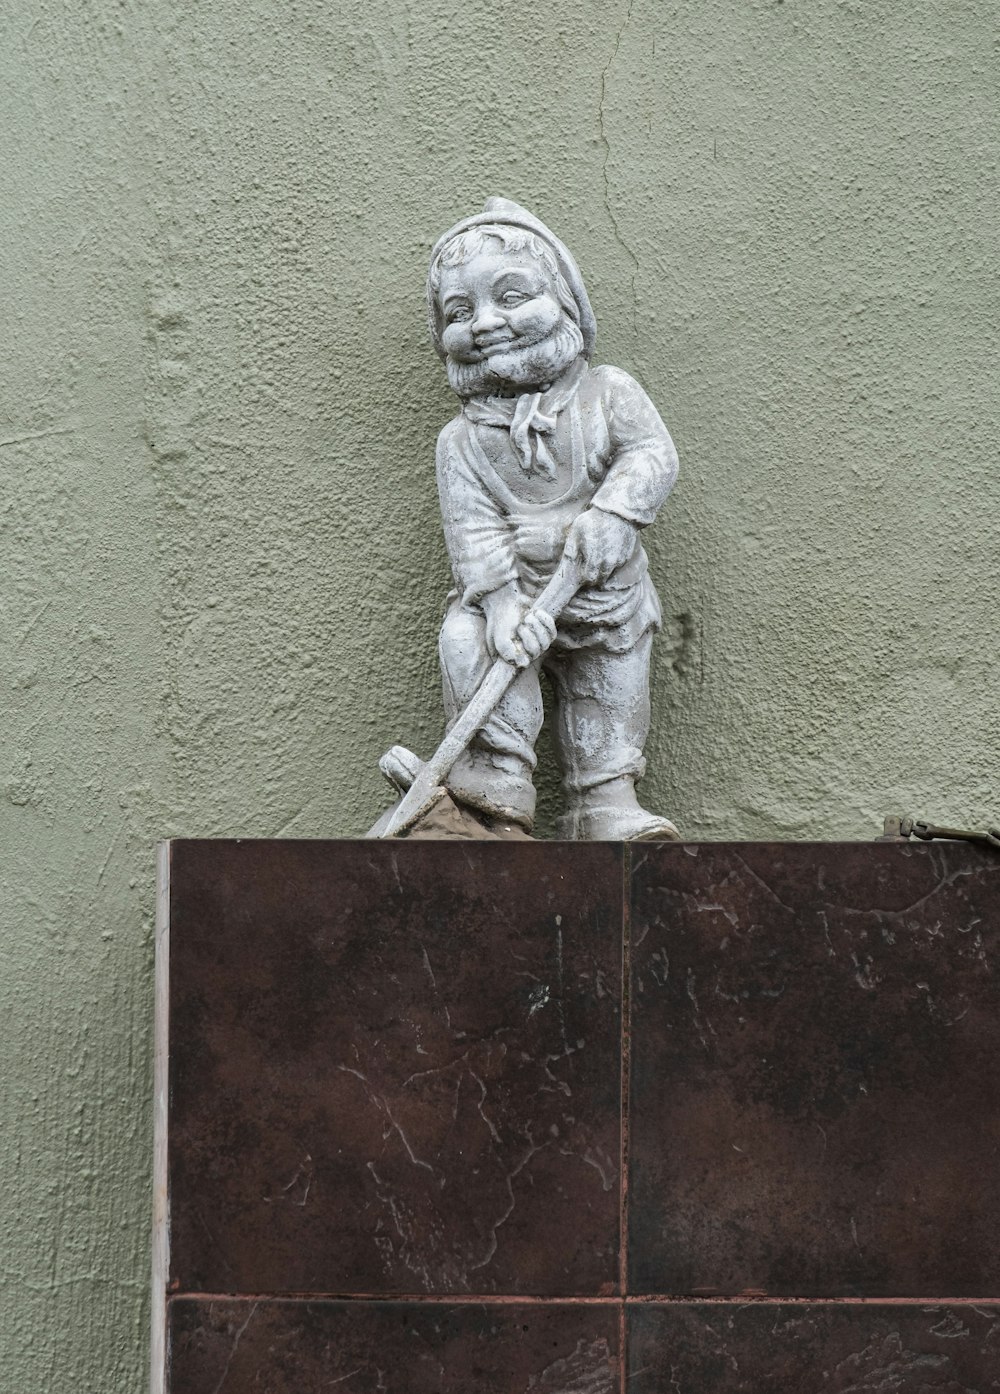 a statue of a boy holding a baseball bat